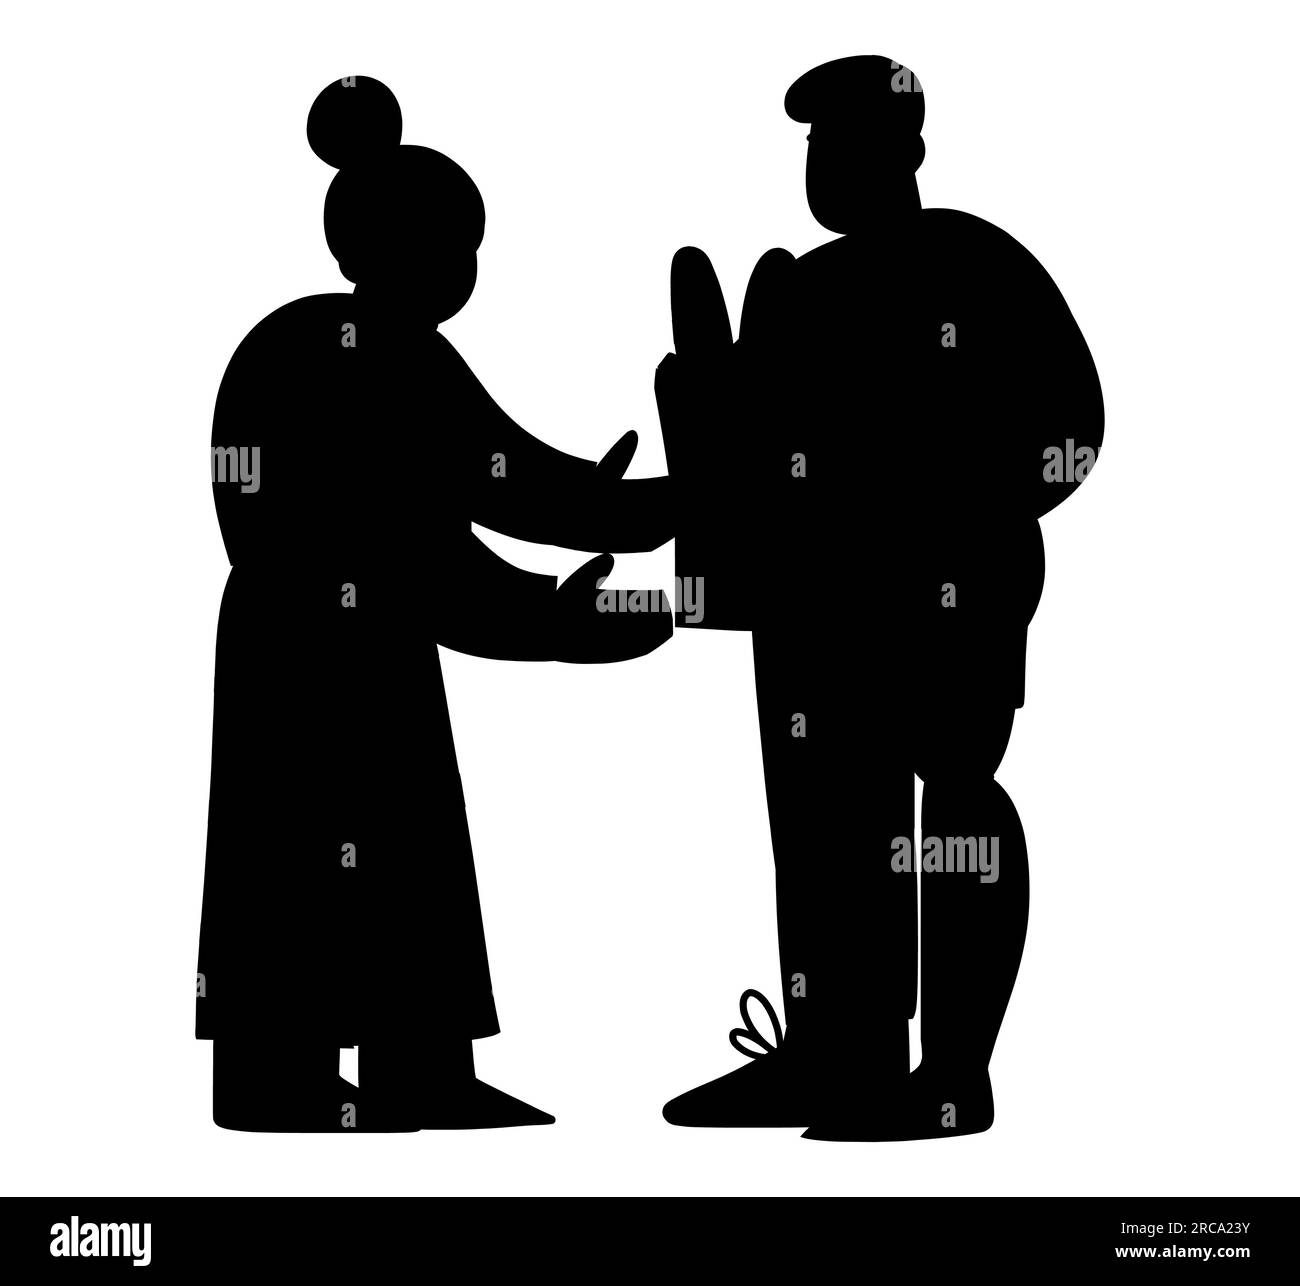 Silhouette noire d'un homme venant de l'épicerie et donnant l'épicerie à sa femme, illustration vectorielle isolée sur fond blanc Illustration de Vecteur